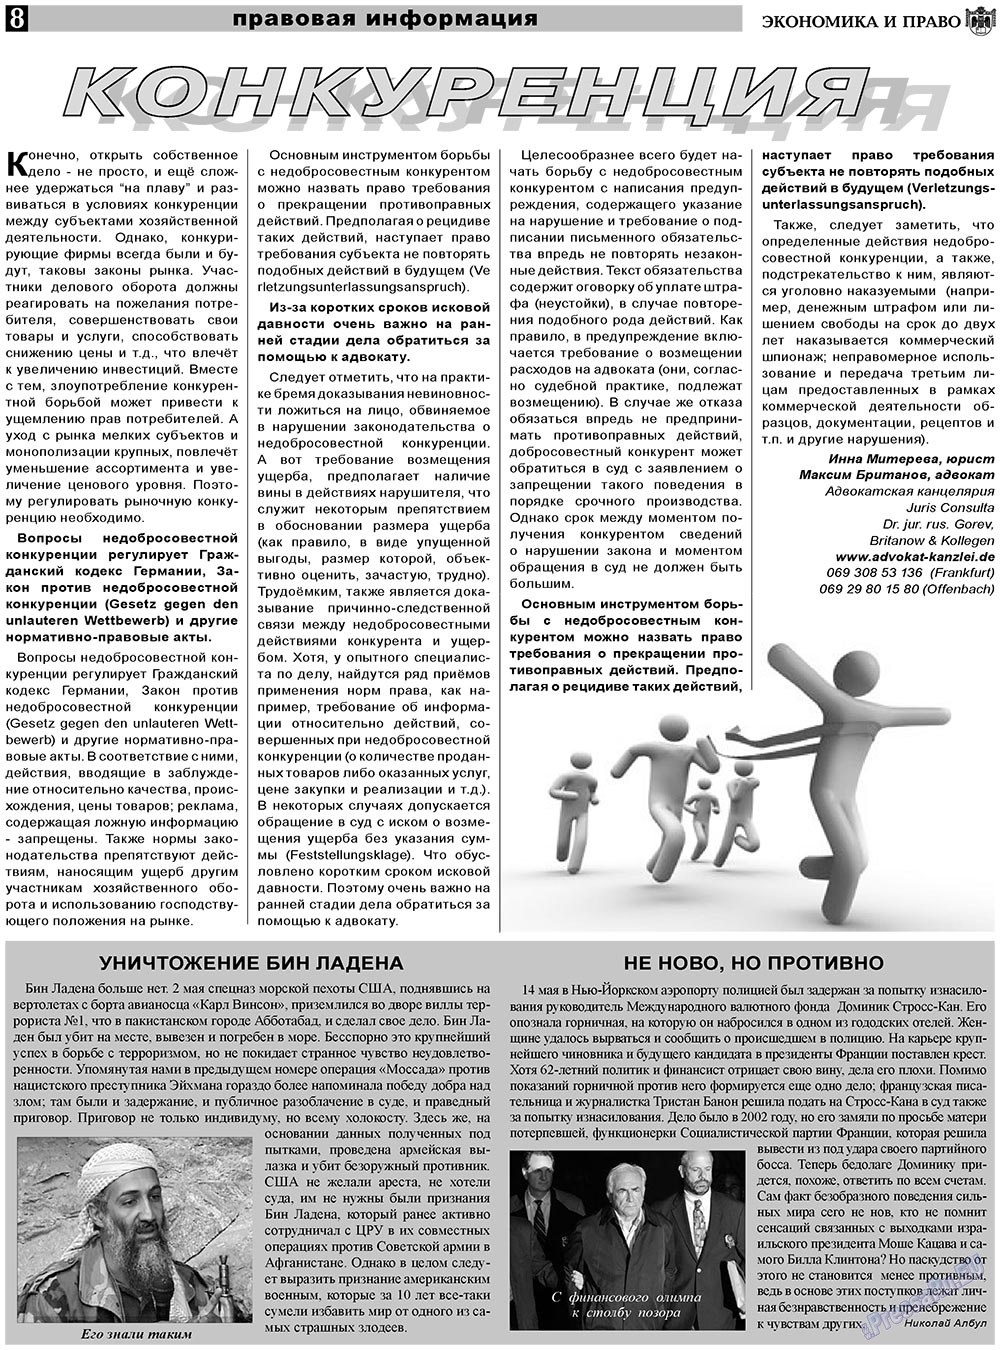 Экономика и право, газета. 2011 №6 стр.8